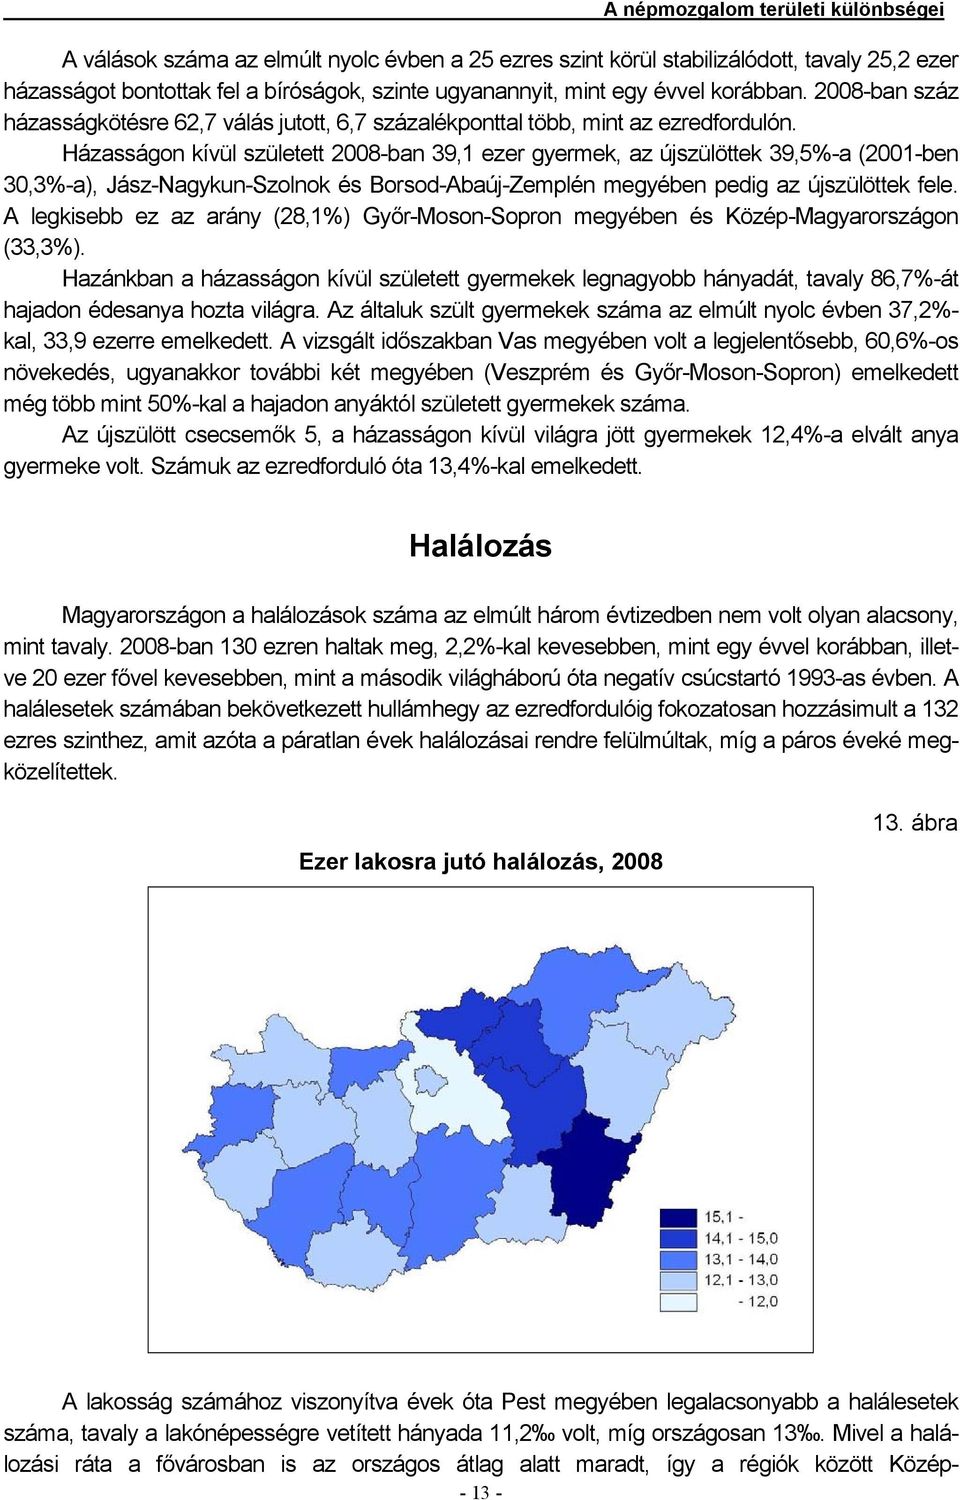 Házasságon kívül született 2008-ban 39,1 ezer gyermek, az újszülöttek 39,5%-a (2001-ben 30,3%-a), Jász-Nagykun-Szolnok és megyében pedig az újszülöttek fele.